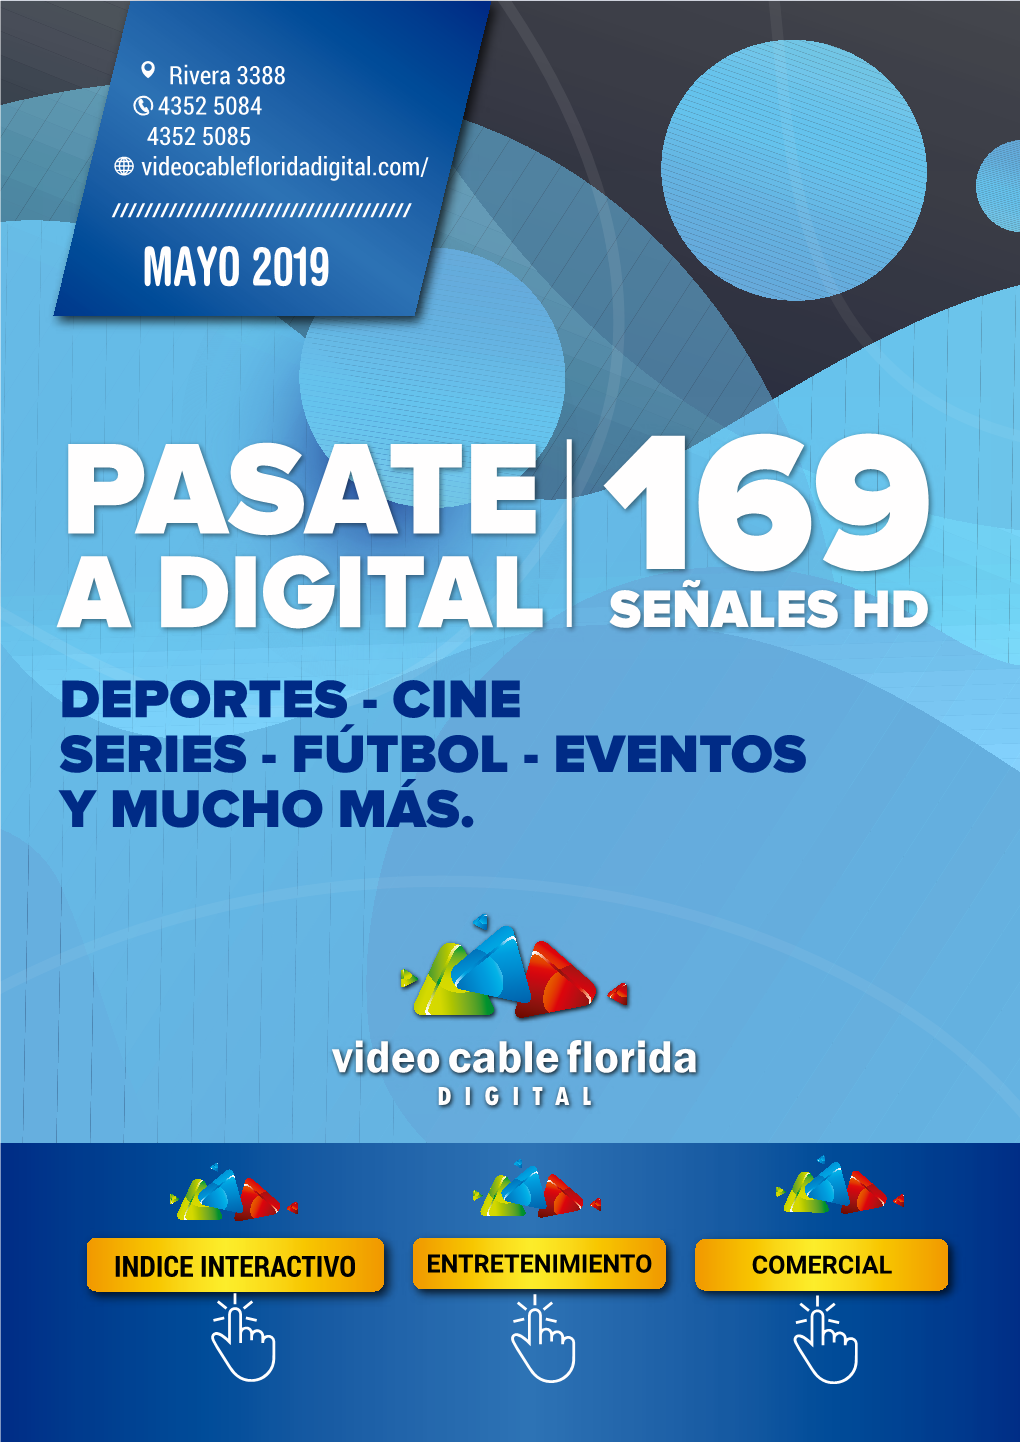 A Digital Señales Hd Deportes - Cine Series - Fútbol - Eventos Y Mucho Más